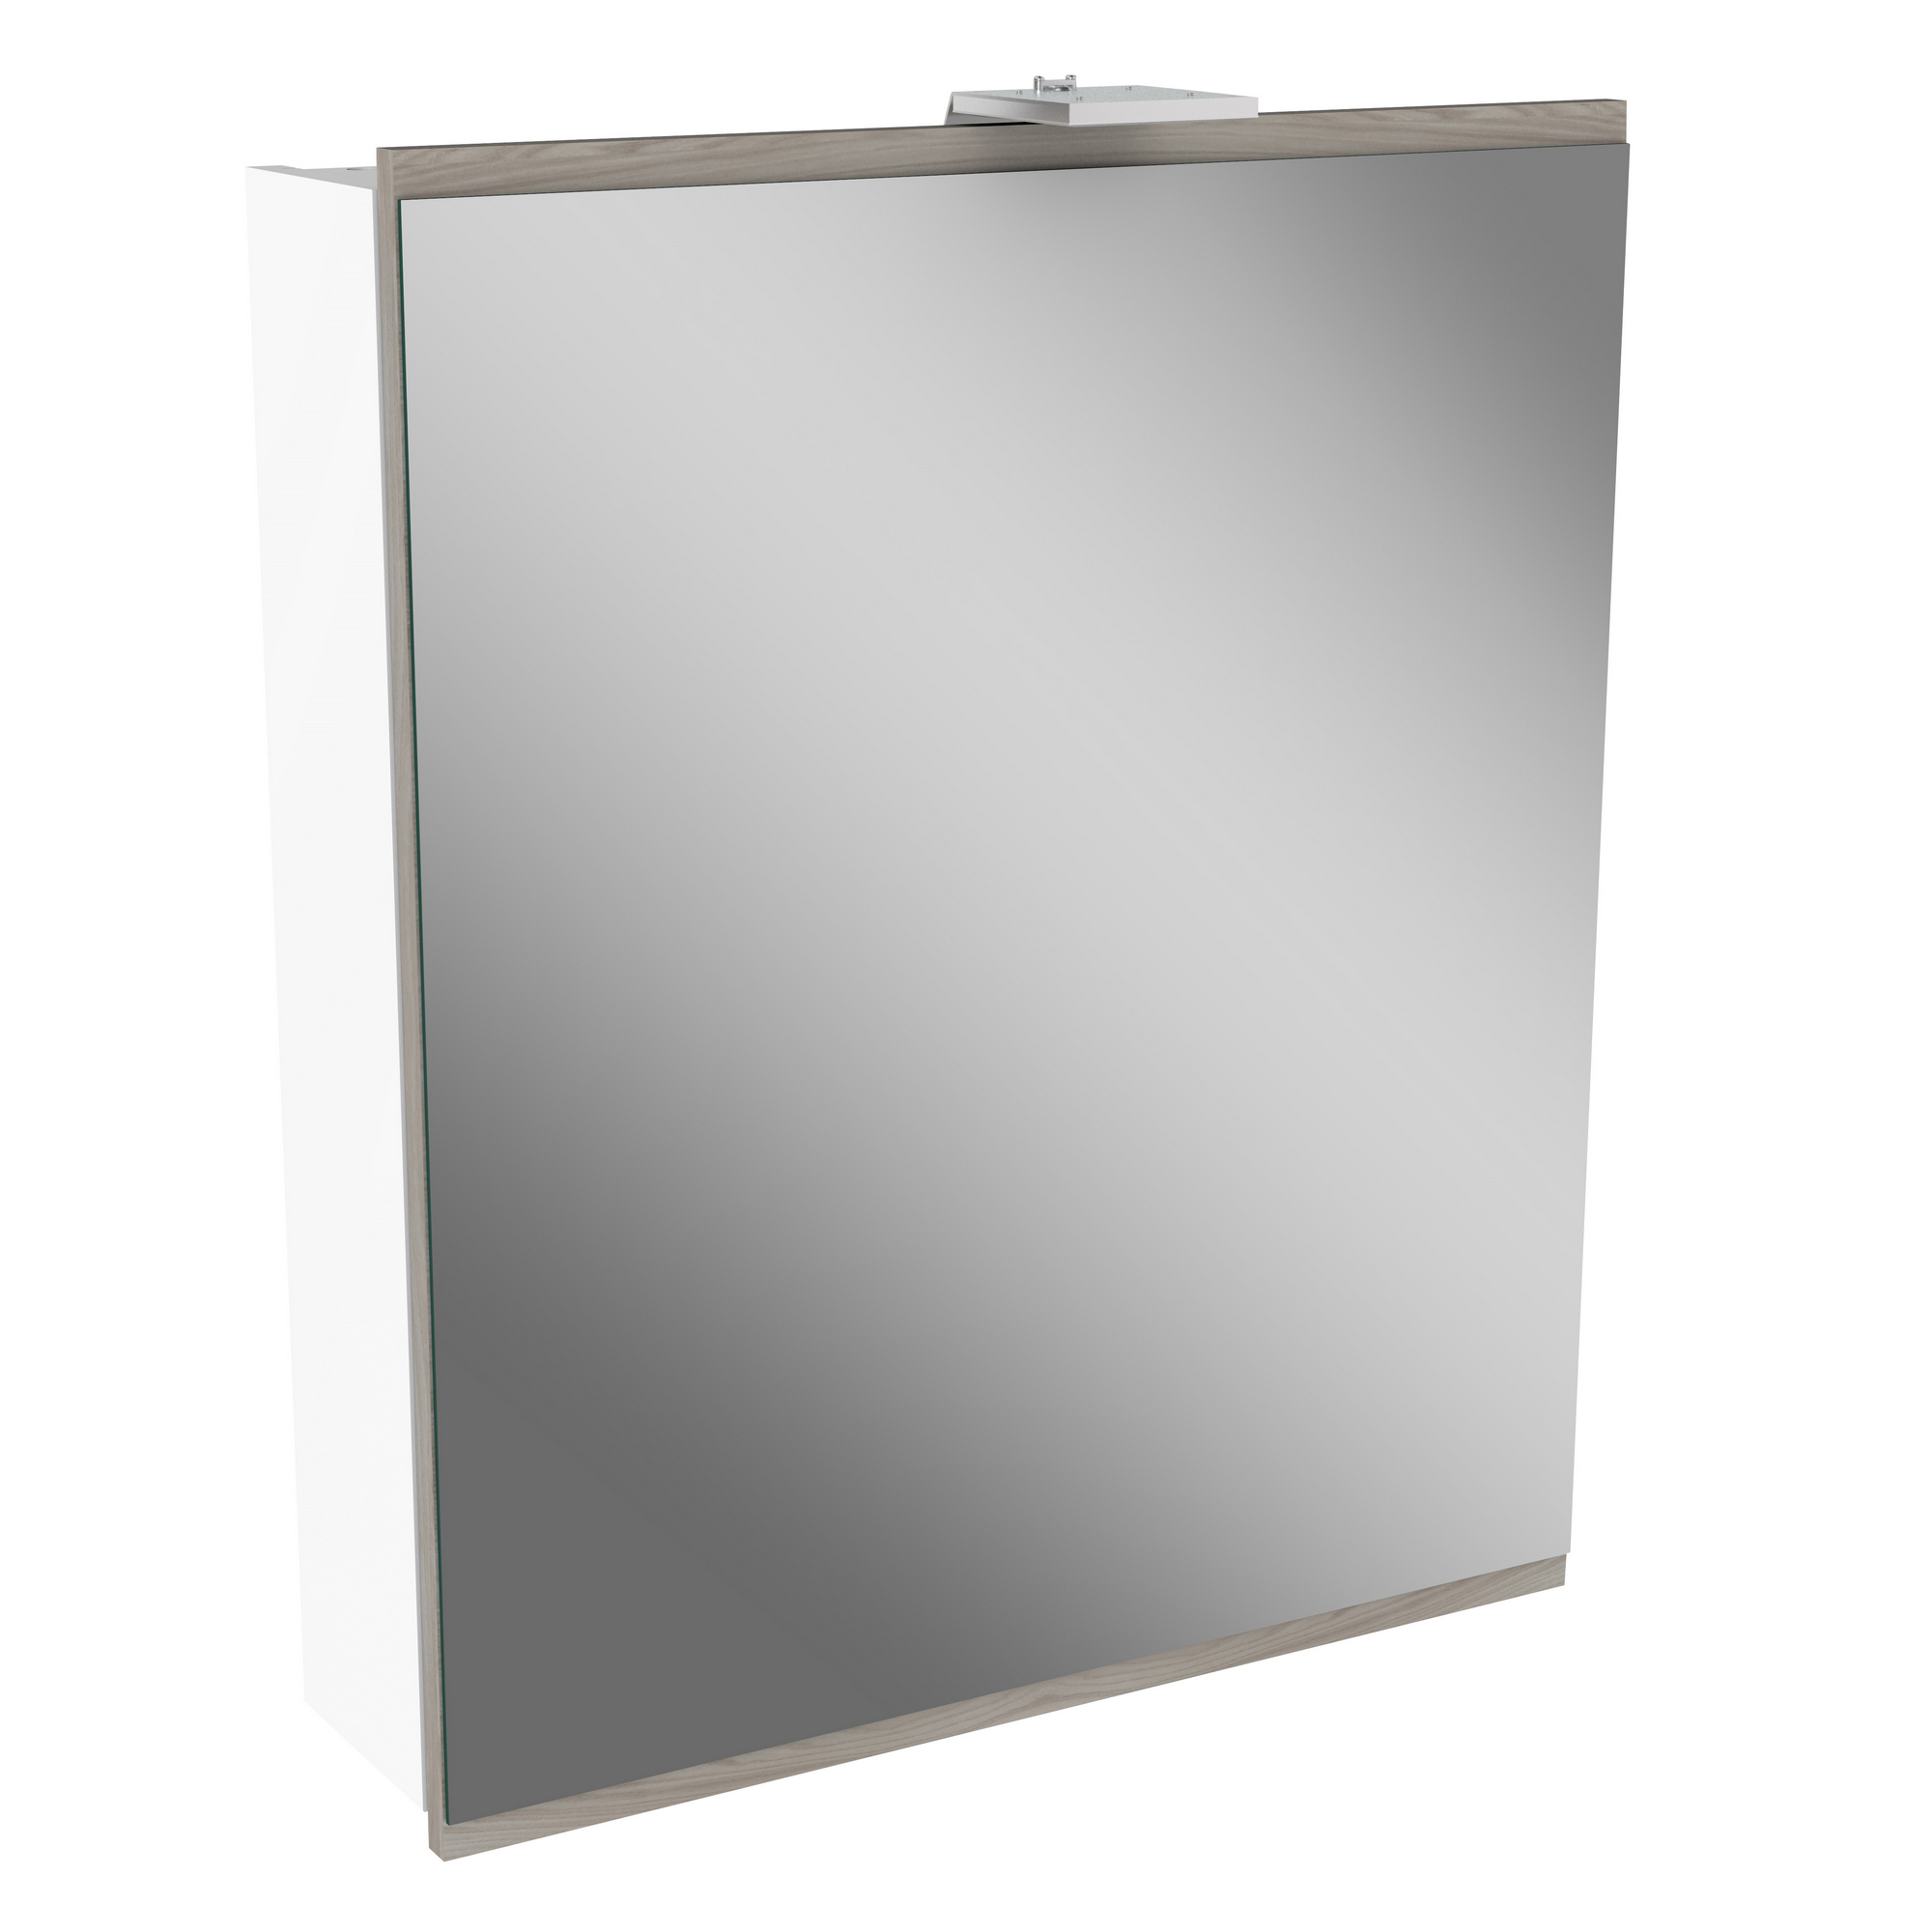 LED-Spiegelschrank 'Lima' weiß/steinesche 60 x 71,2 x 15,3 cm + product picture